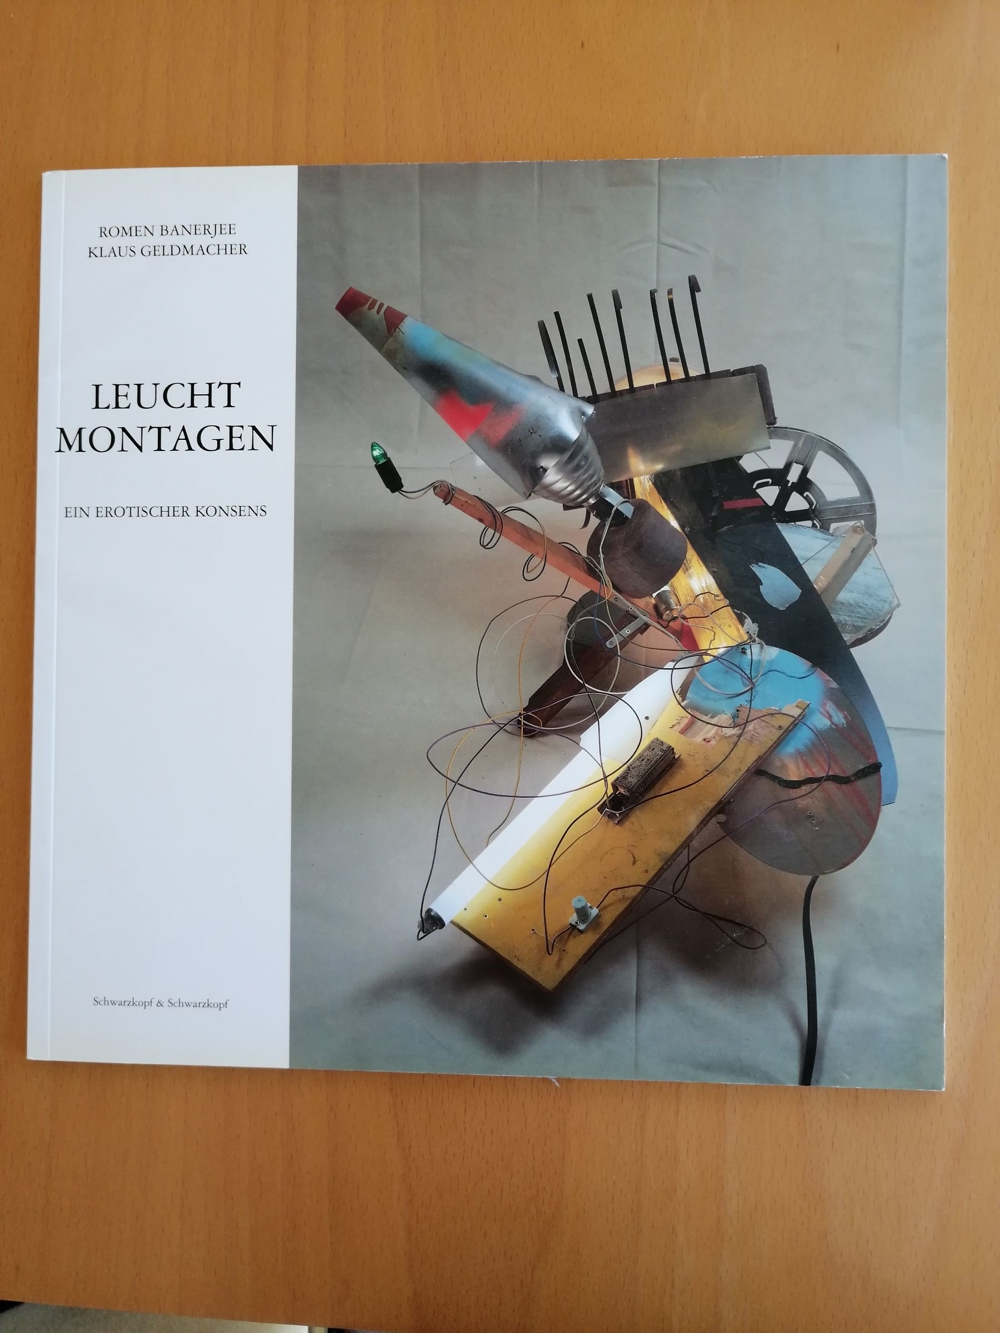 Moderne Kunst aus 1995 -Leuchtmontagen - Ein erotischer Konsens - nicht nur für angehende Künstler